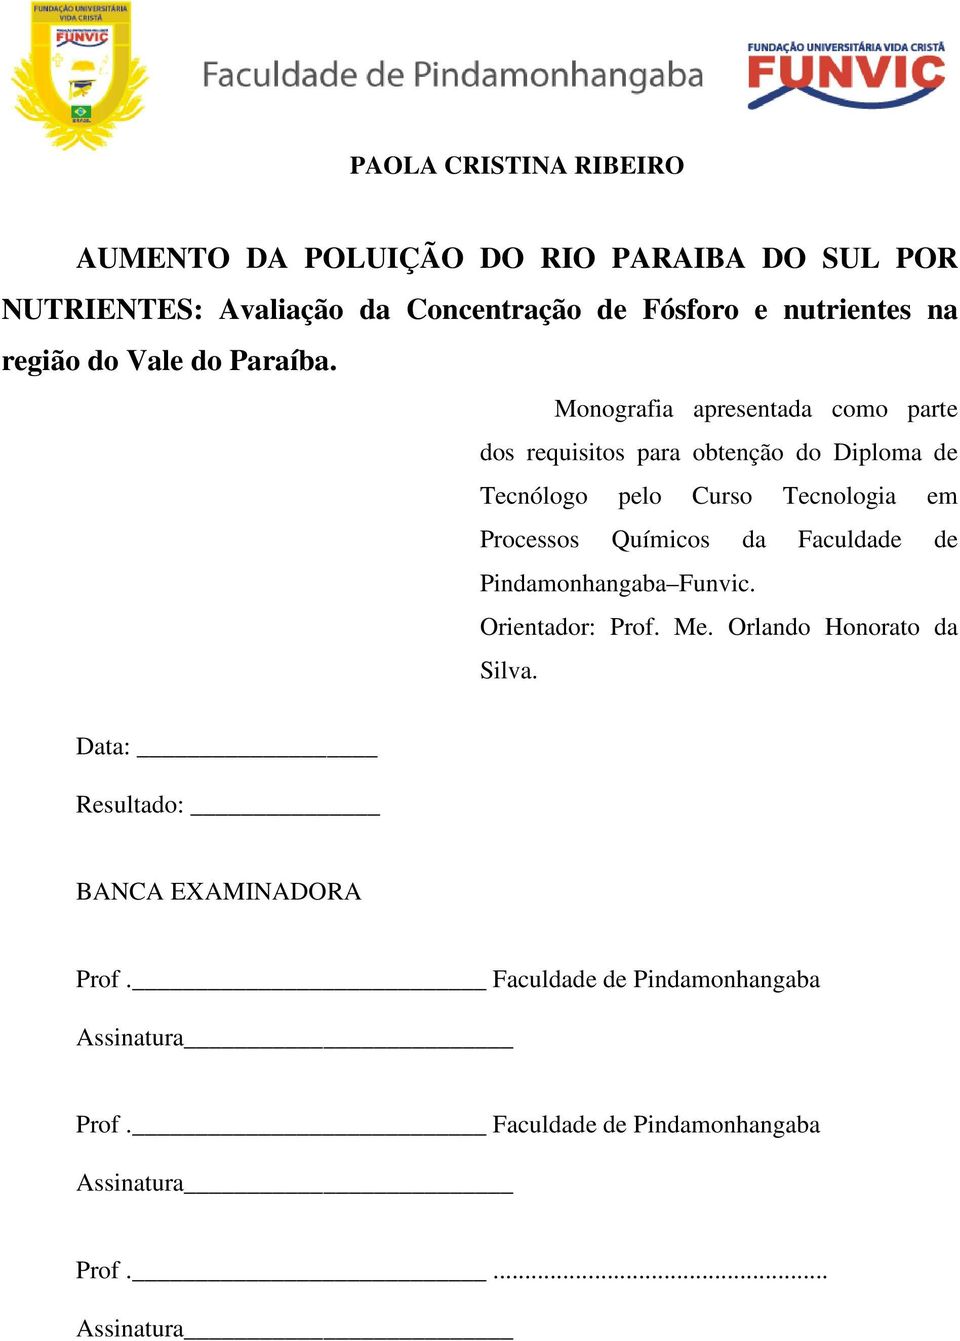 Monografia apresentada como parte dos requisitos para obtenção do Diploma de Tecnólogo pelo Curso Tecnologia em Processos Químicos